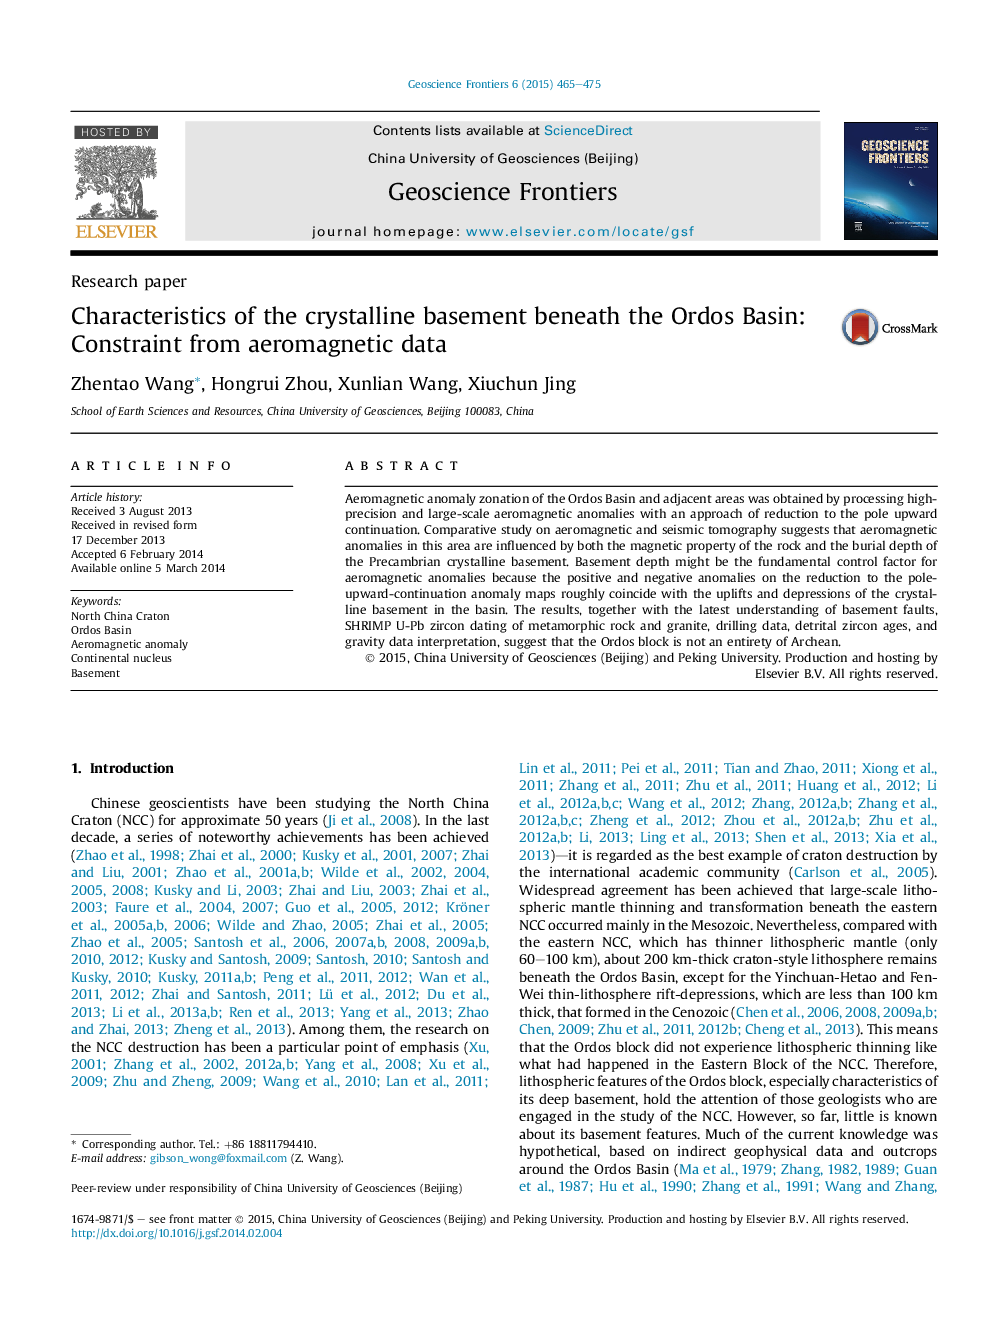 خصوصیات زیرزمین بلوری زیر حوضه ارومیه: محدودیت از داده های هواشناسی 